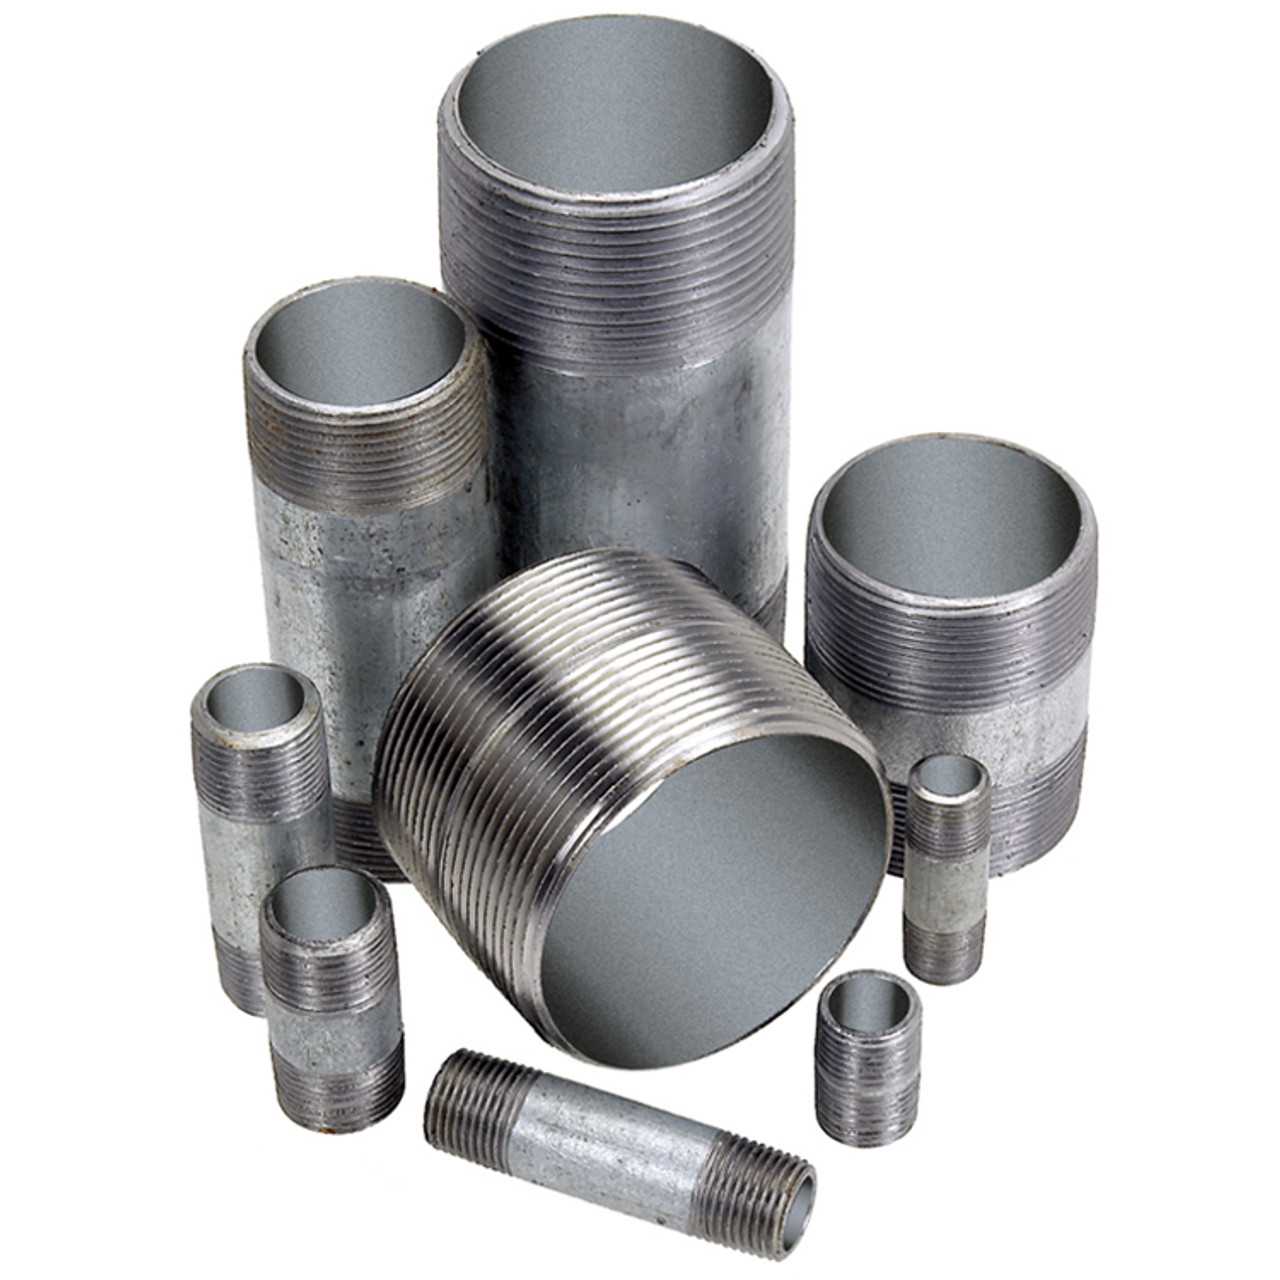 1-1/4 x 6" Sch. 40 Galvanized Steel Male NPT Nipple   G1616G-125X6